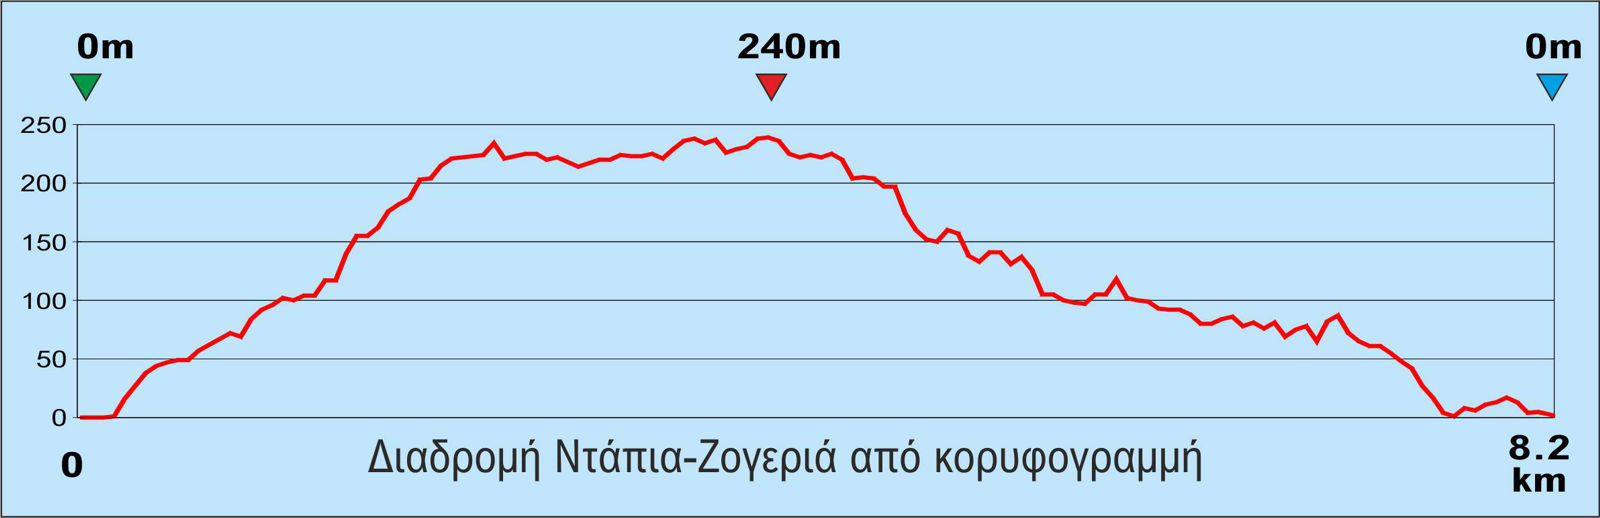 Σπέτσες: Υψομετρικό προφίλ της διαδρομής Ντάπια-Ζογεριά από την κορυφογραμμή